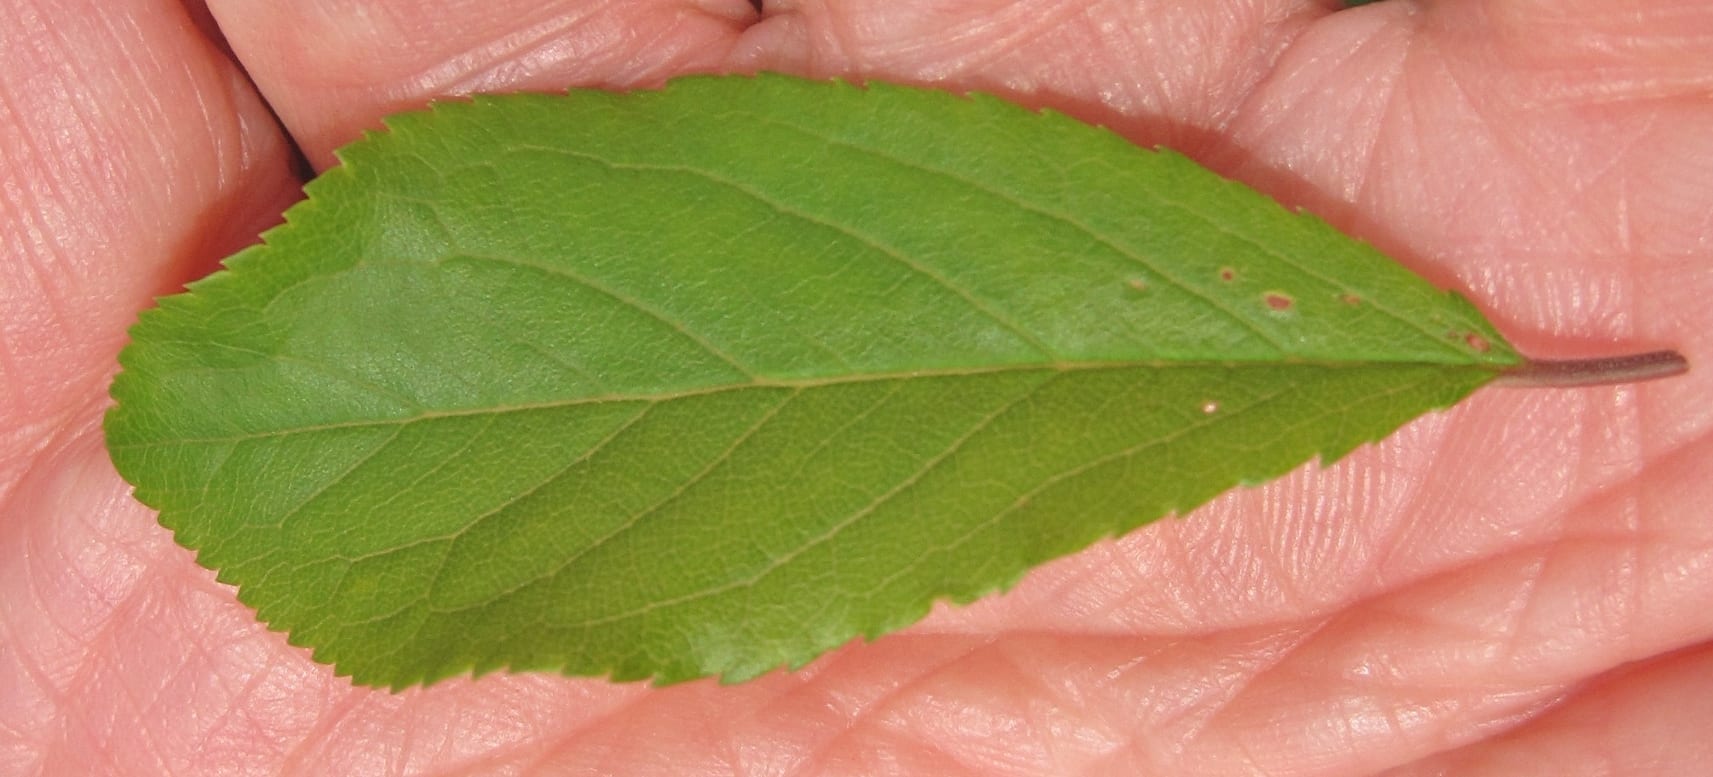 blackthorn leaf